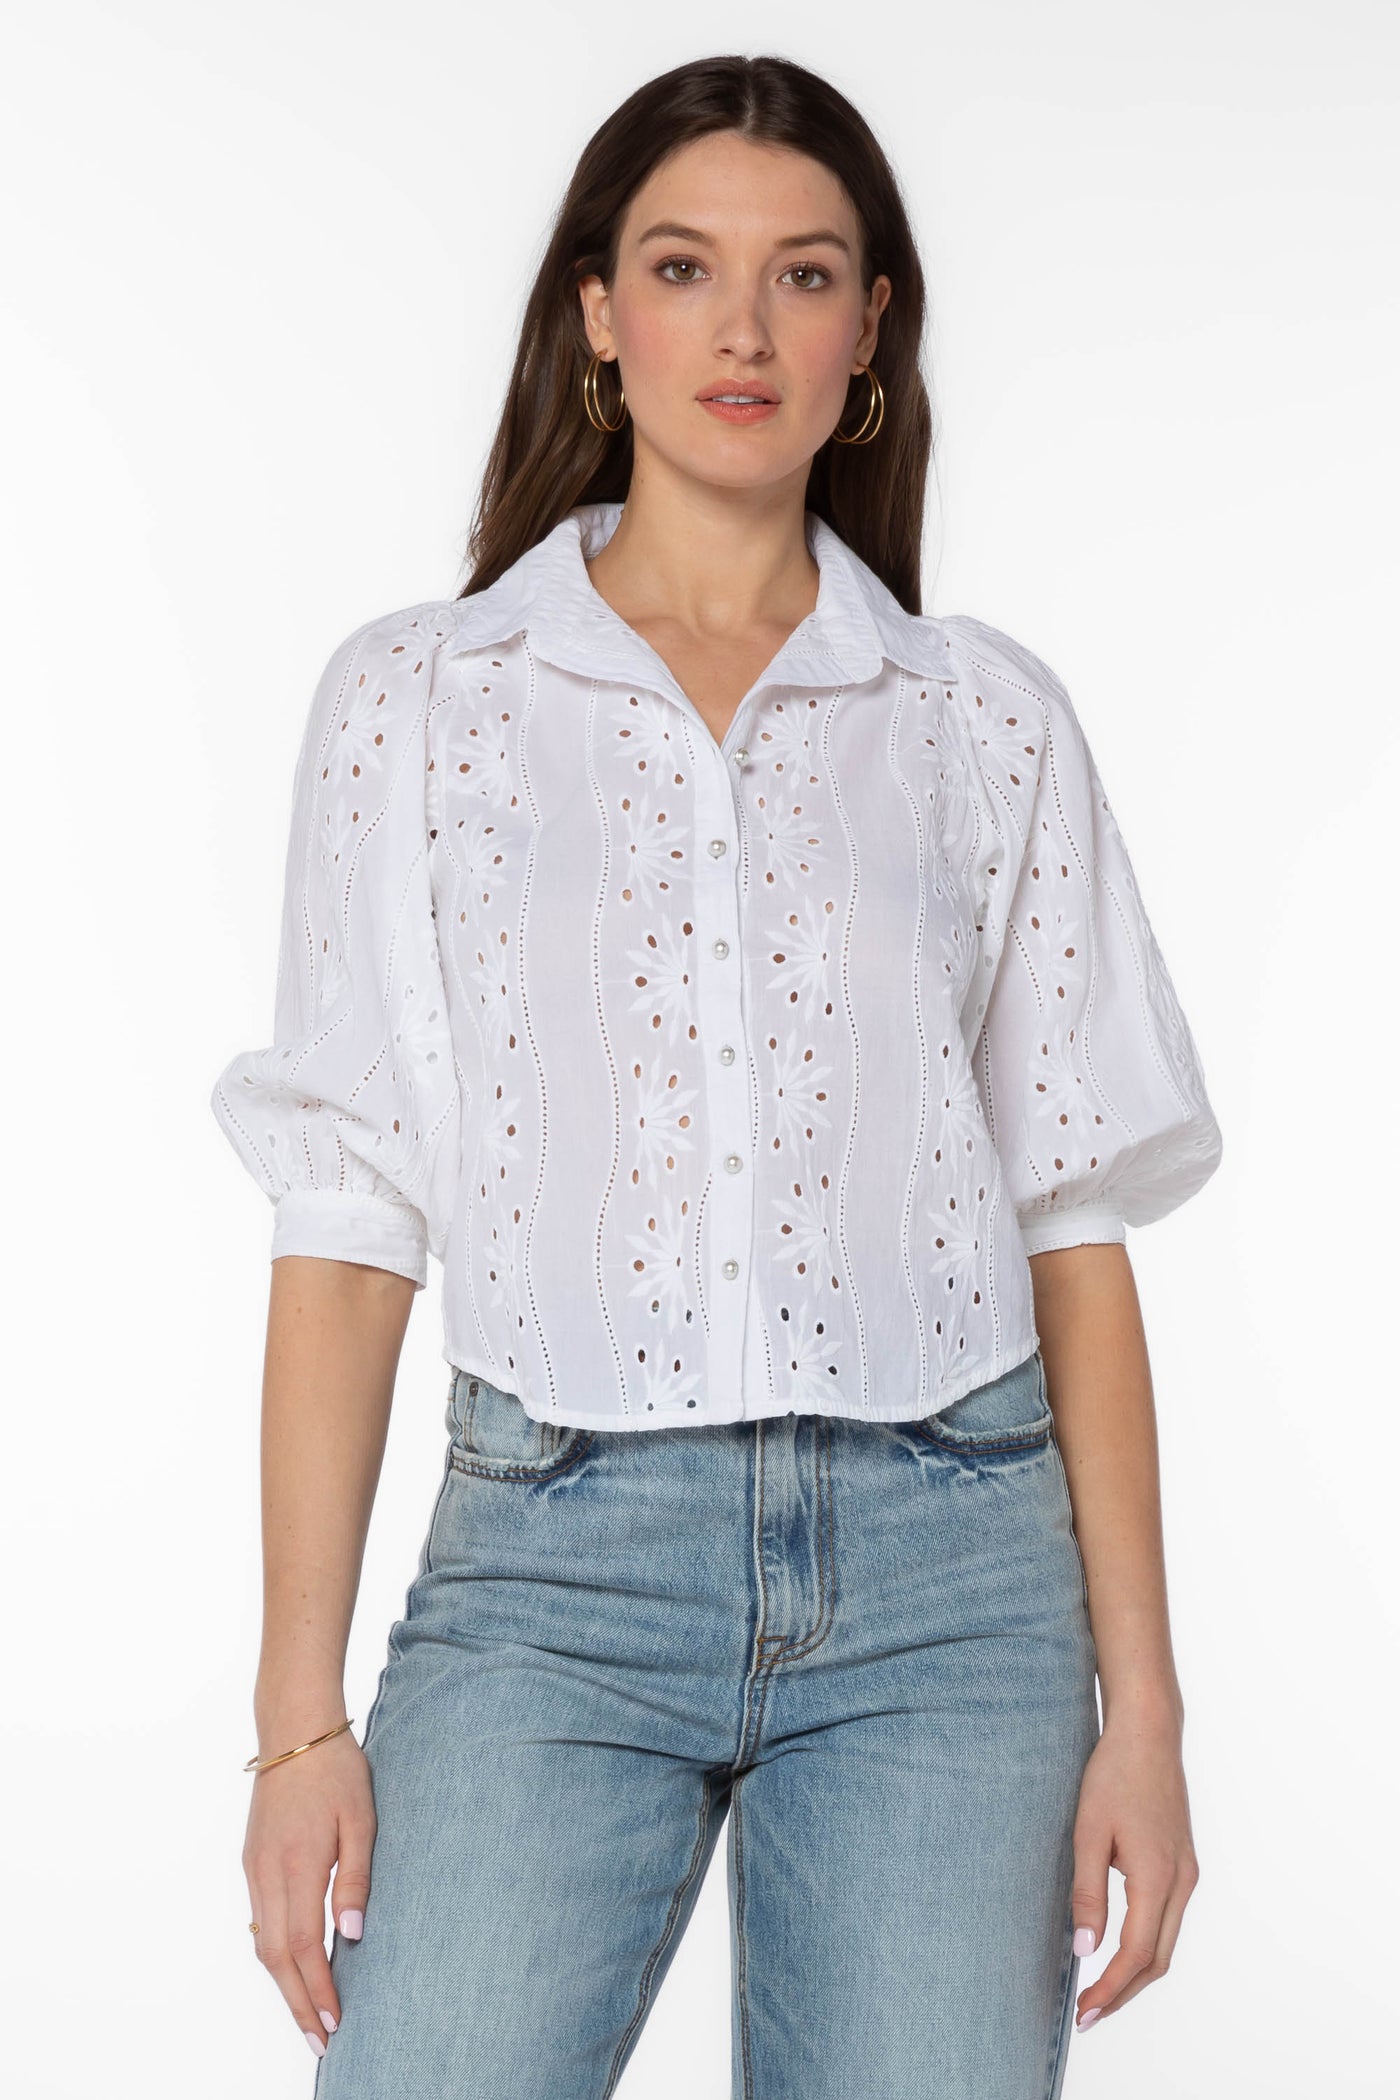 Teegan White Shirt - Tops - Velvet Heart Clothing